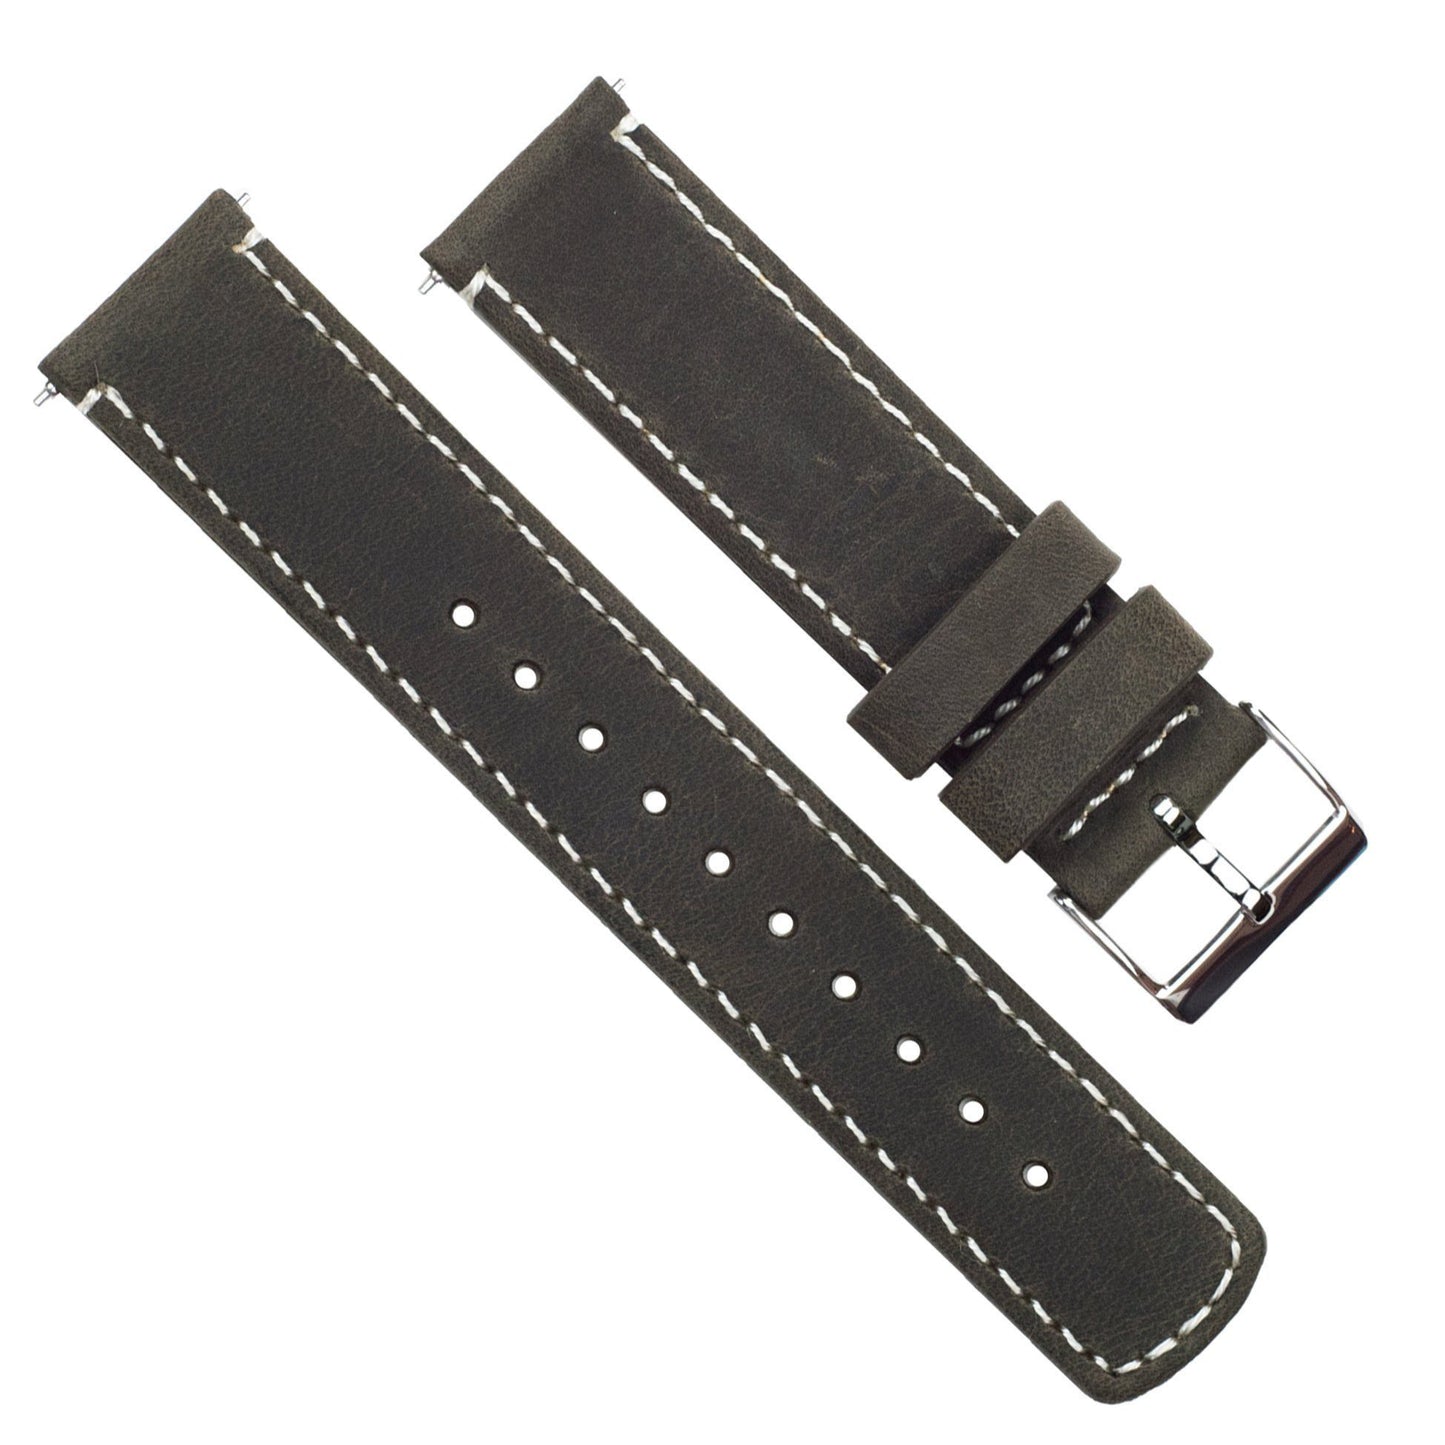 Samsung Galaxy Watch | Espresso Brown Leather & Linen White Stitching - Barton Watch Bands